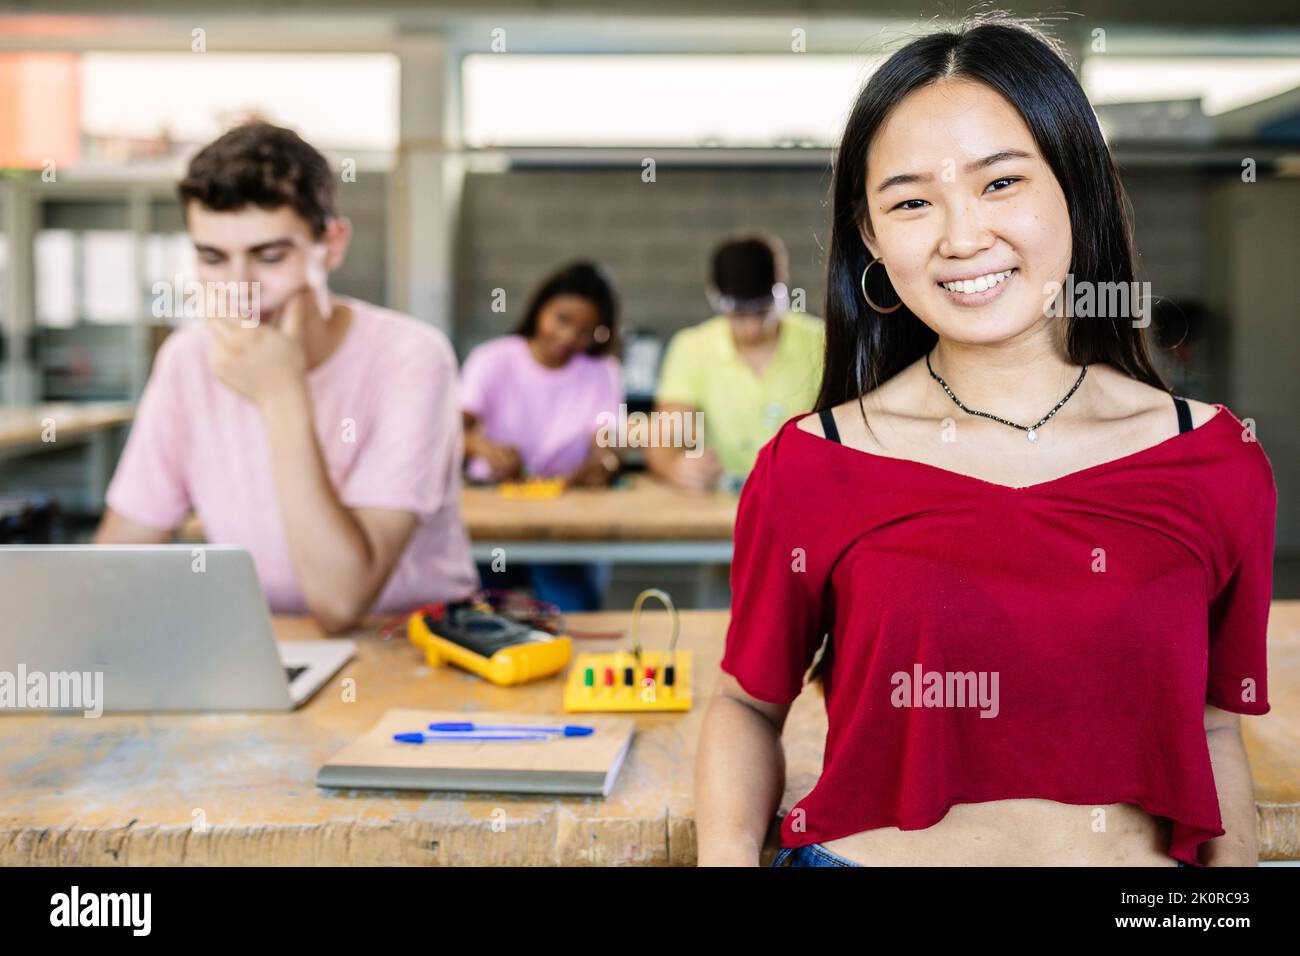 Portrait d'une jeune étudiante asiatique souriant devant un appareil photo debout en classe Banque D'Images